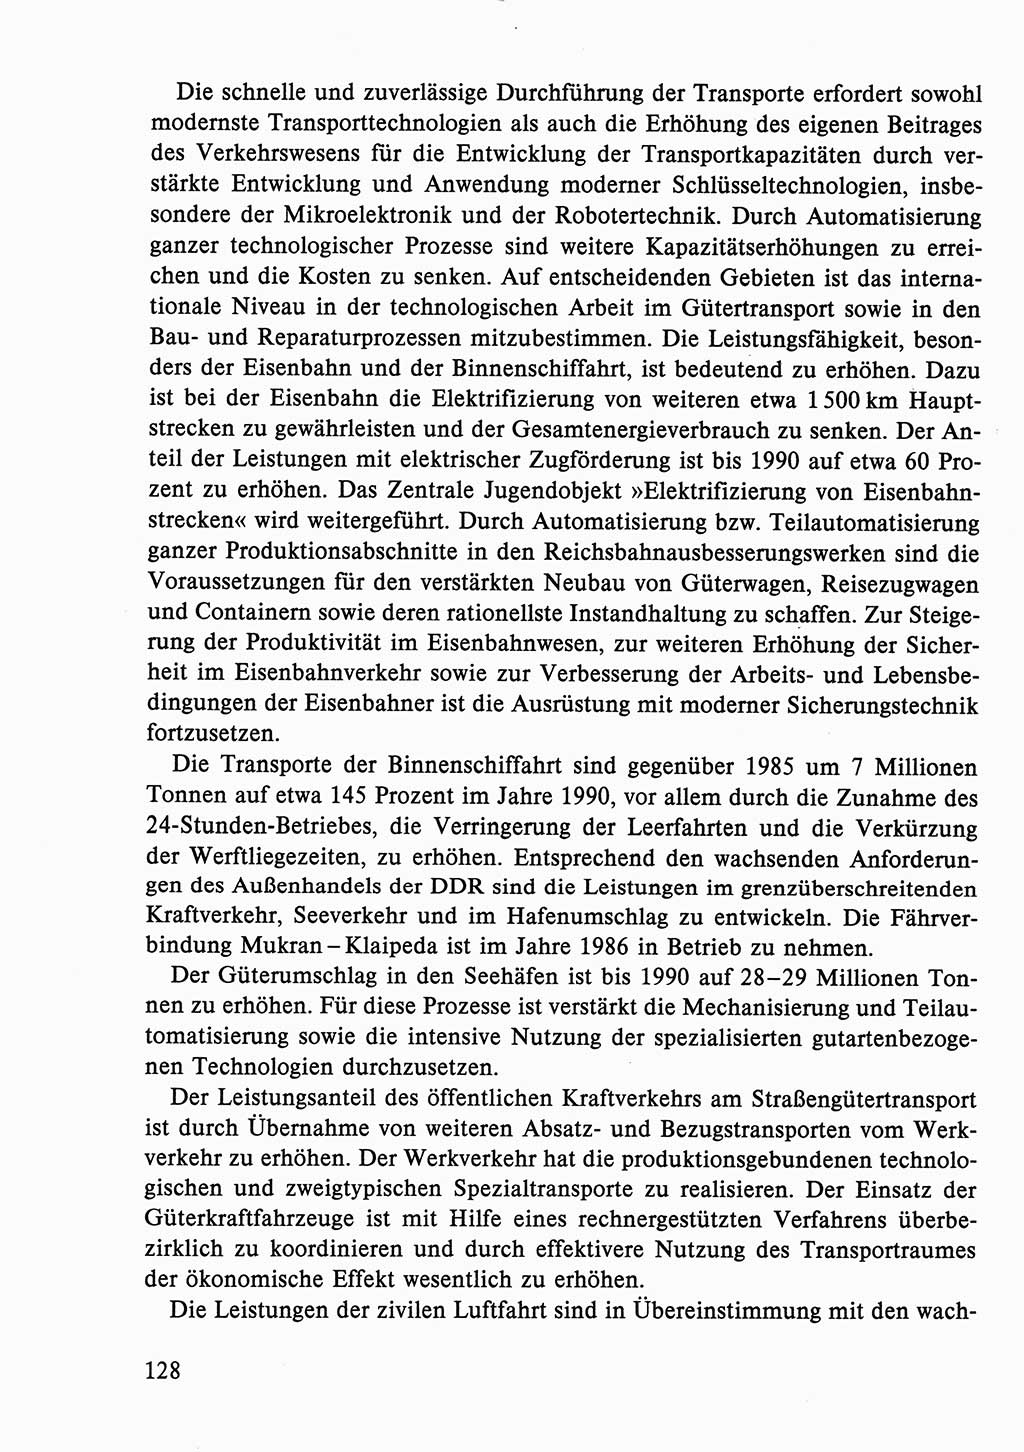 Dokumente der Sozialistischen Einheitspartei Deutschlands (SED) [Deutsche Demokratische Republik (DDR)] 1986-1987, Seite 128 (Dok. SED DDR 1986-1987, S. 128)